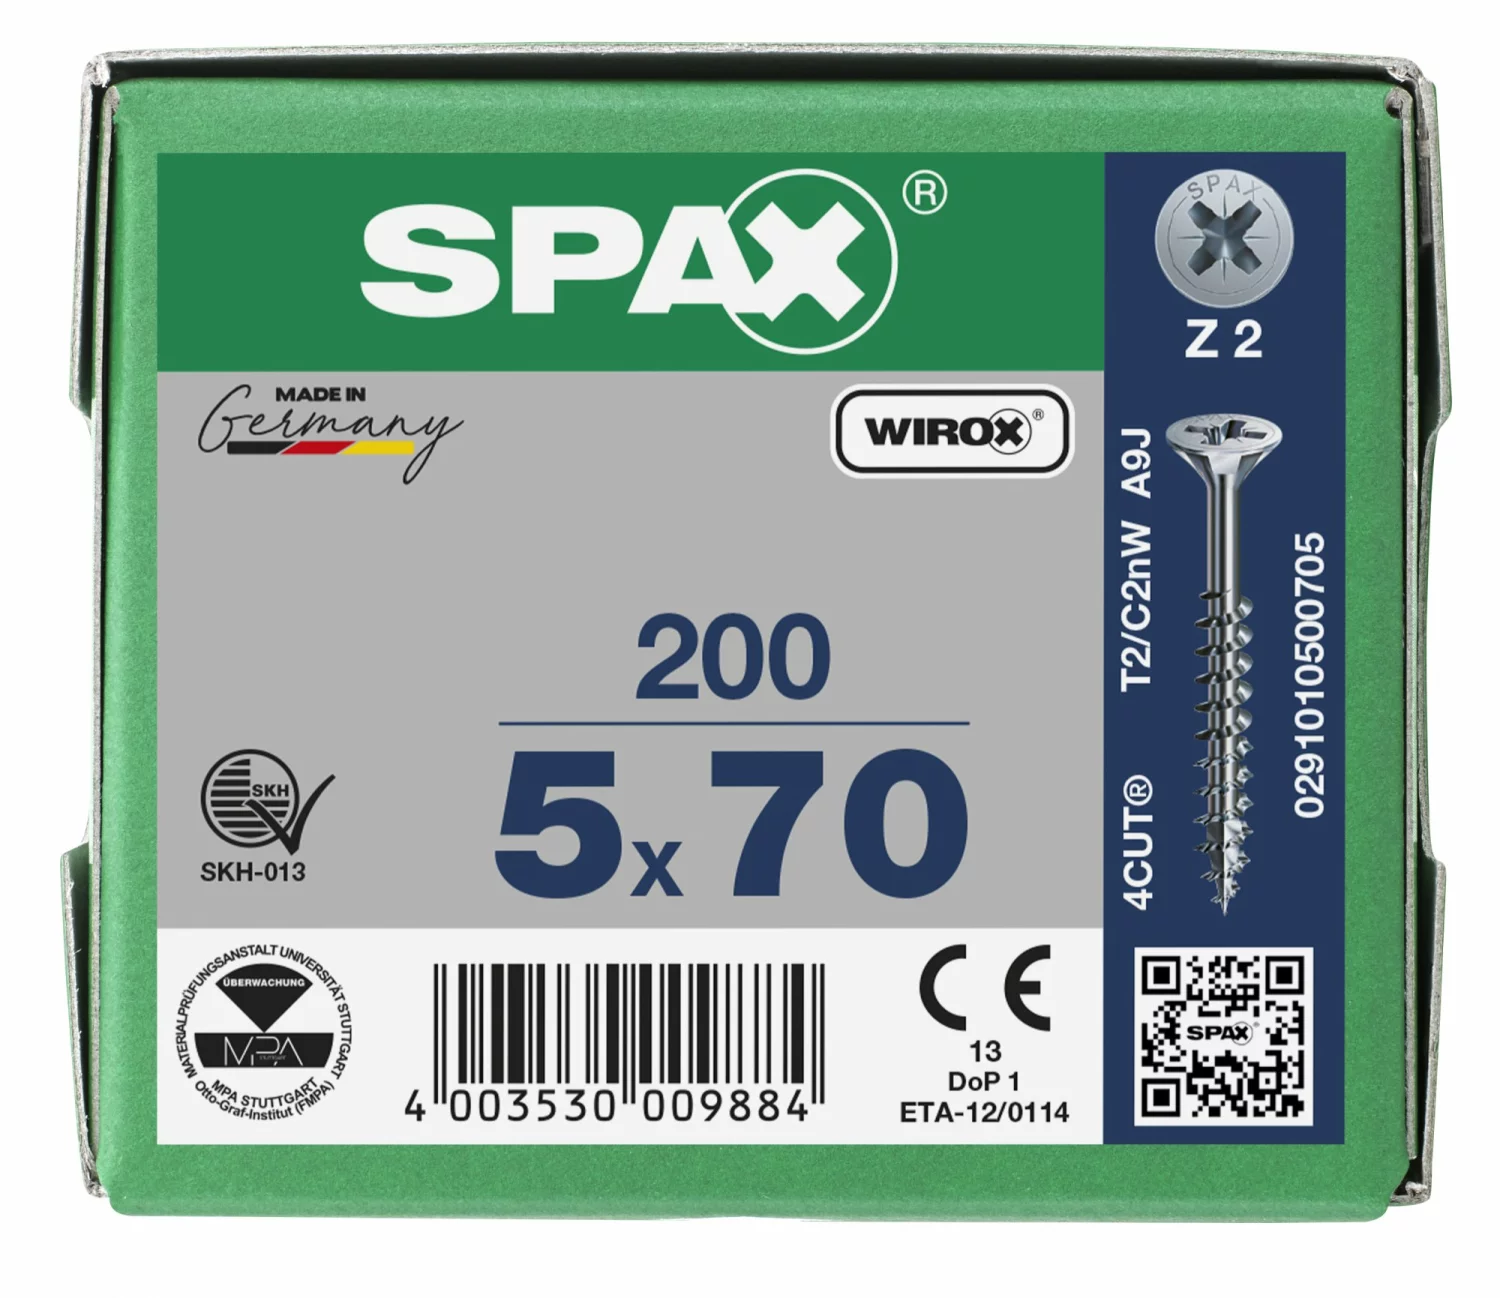 SPAX 291010500705 - Vis universelle, 5 x 70 mm, 200 pièces, Filetage partiel, Tête fraisée, Cruciforme Z2, 4CUT, WIROX